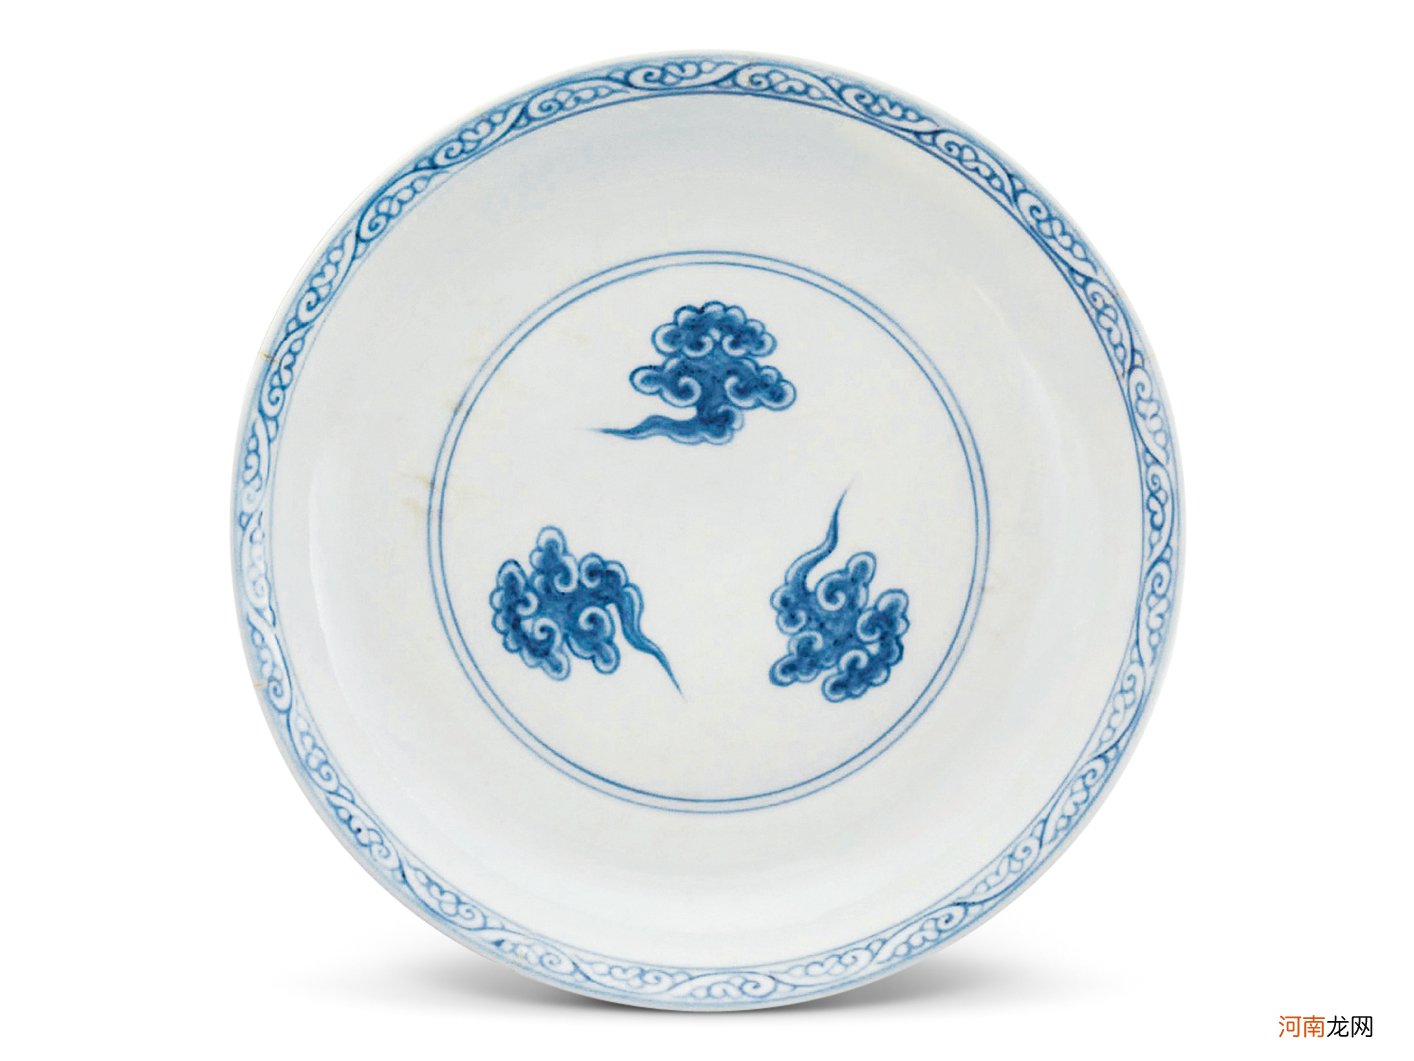 明代各时期的青花瓷特征 明代青花瓷盘有几种